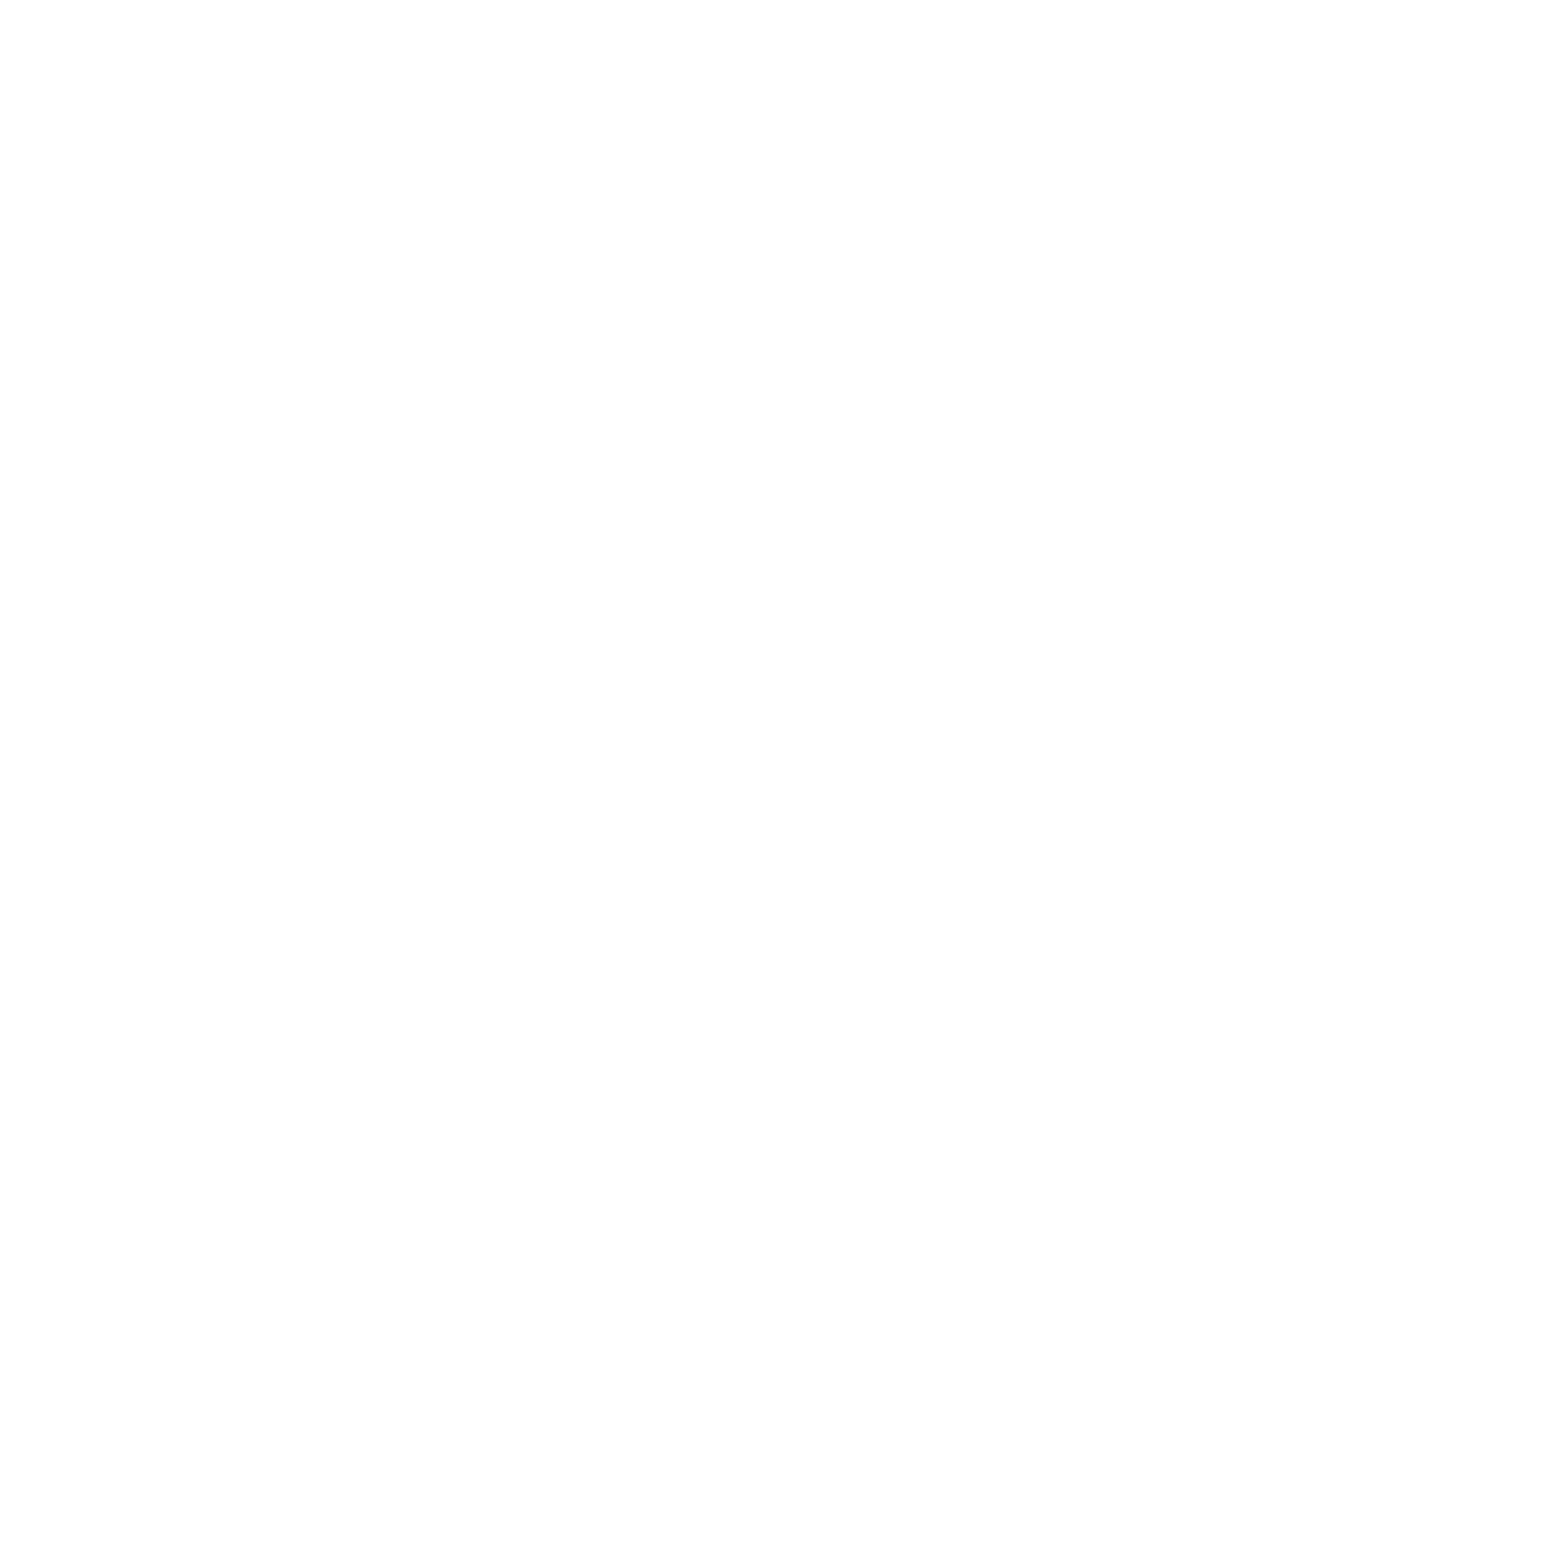 Megacable Holdings logo pour fonds sombres (PNG transparent)